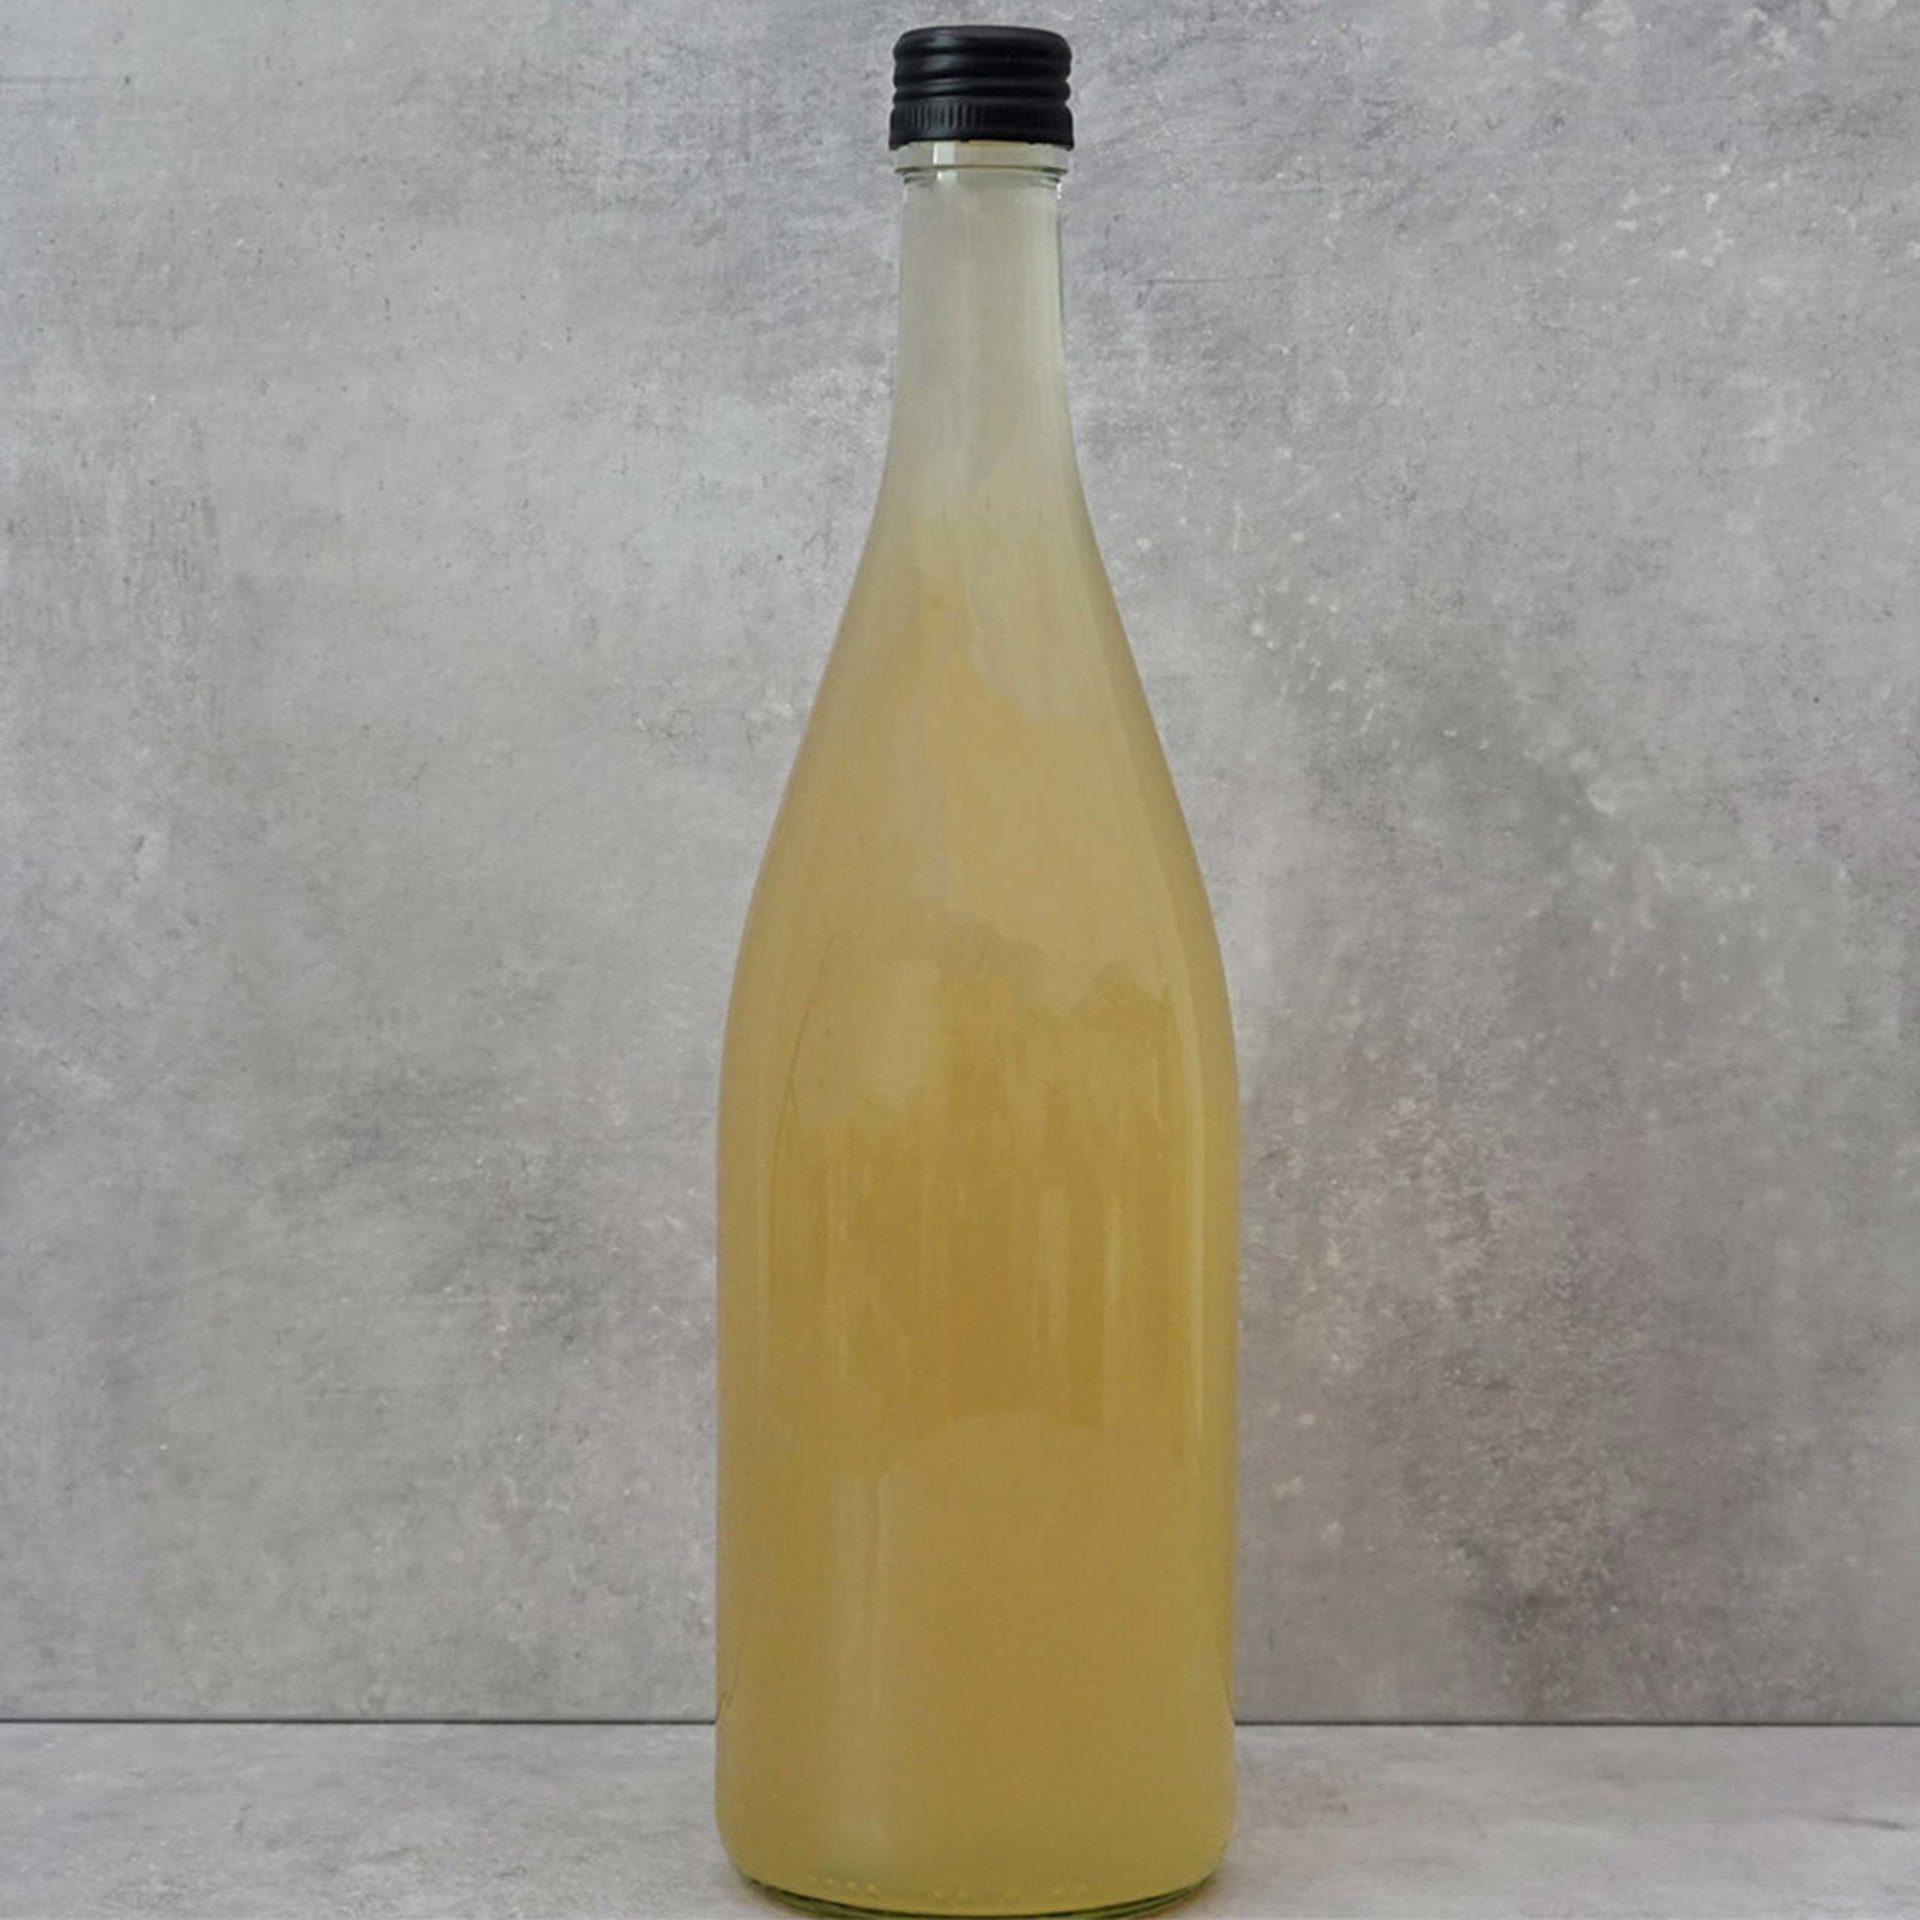 Honey wine - mead in glass bottle